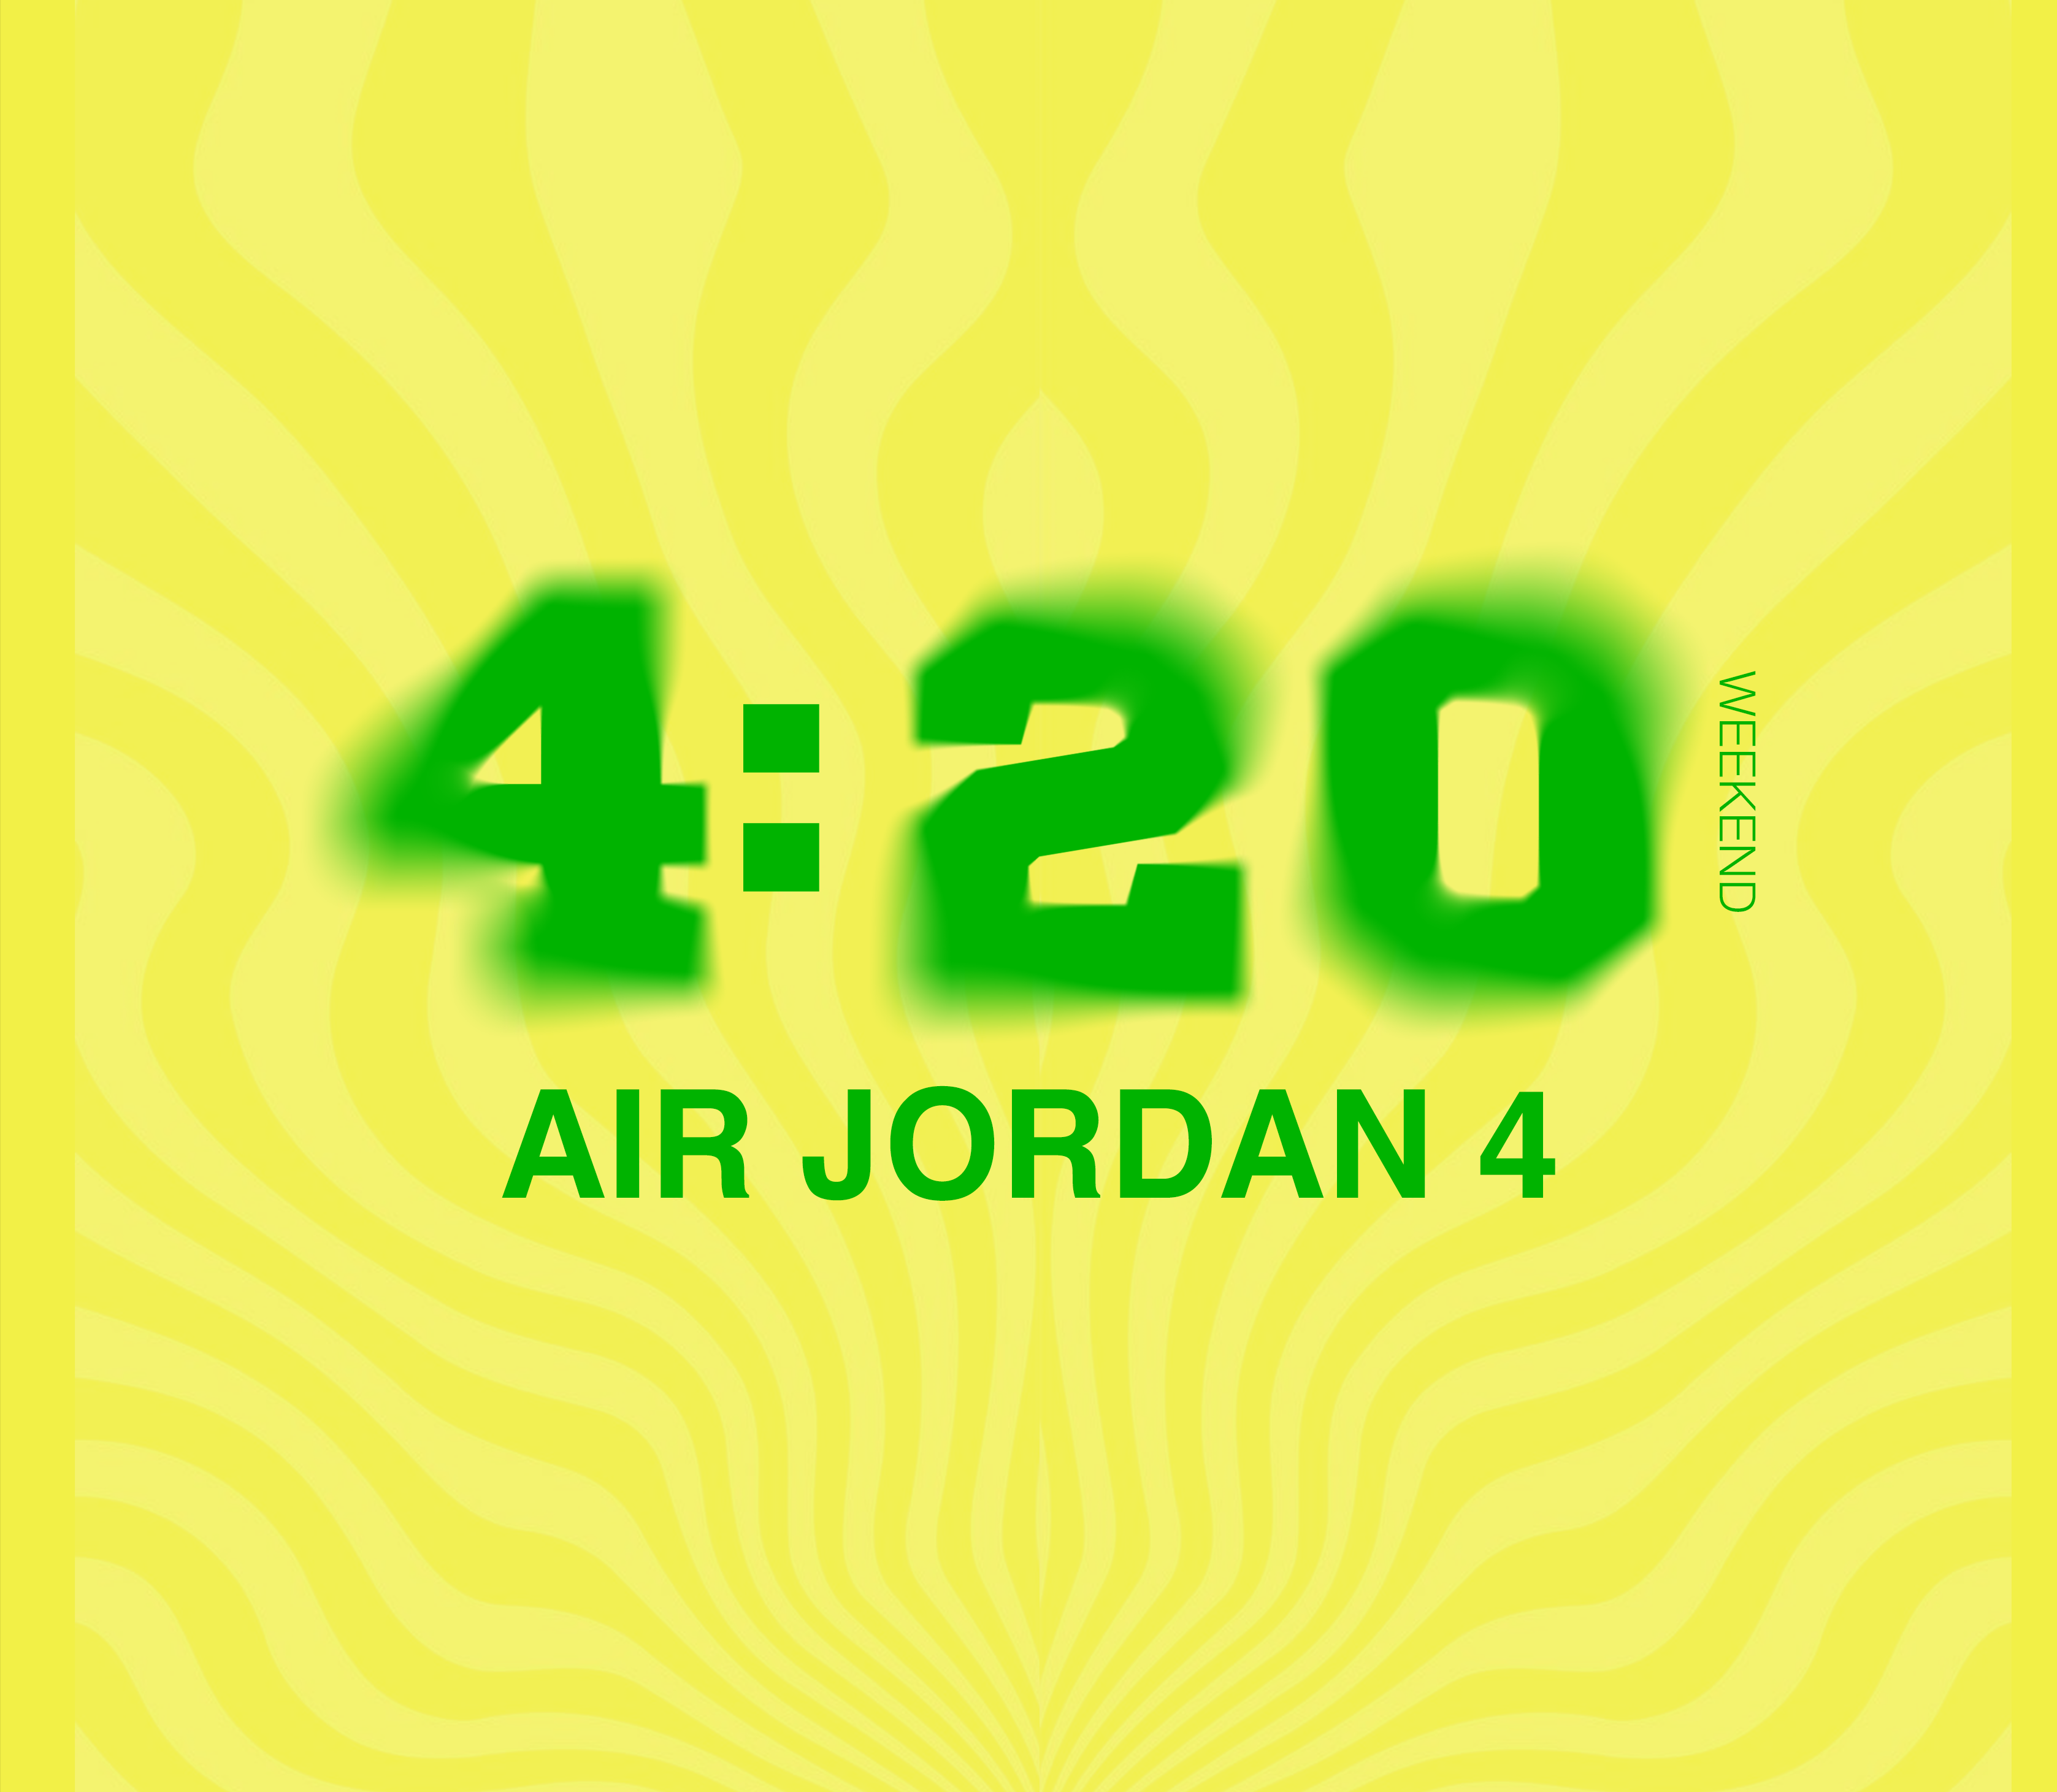 420 AIR JORDAN 4